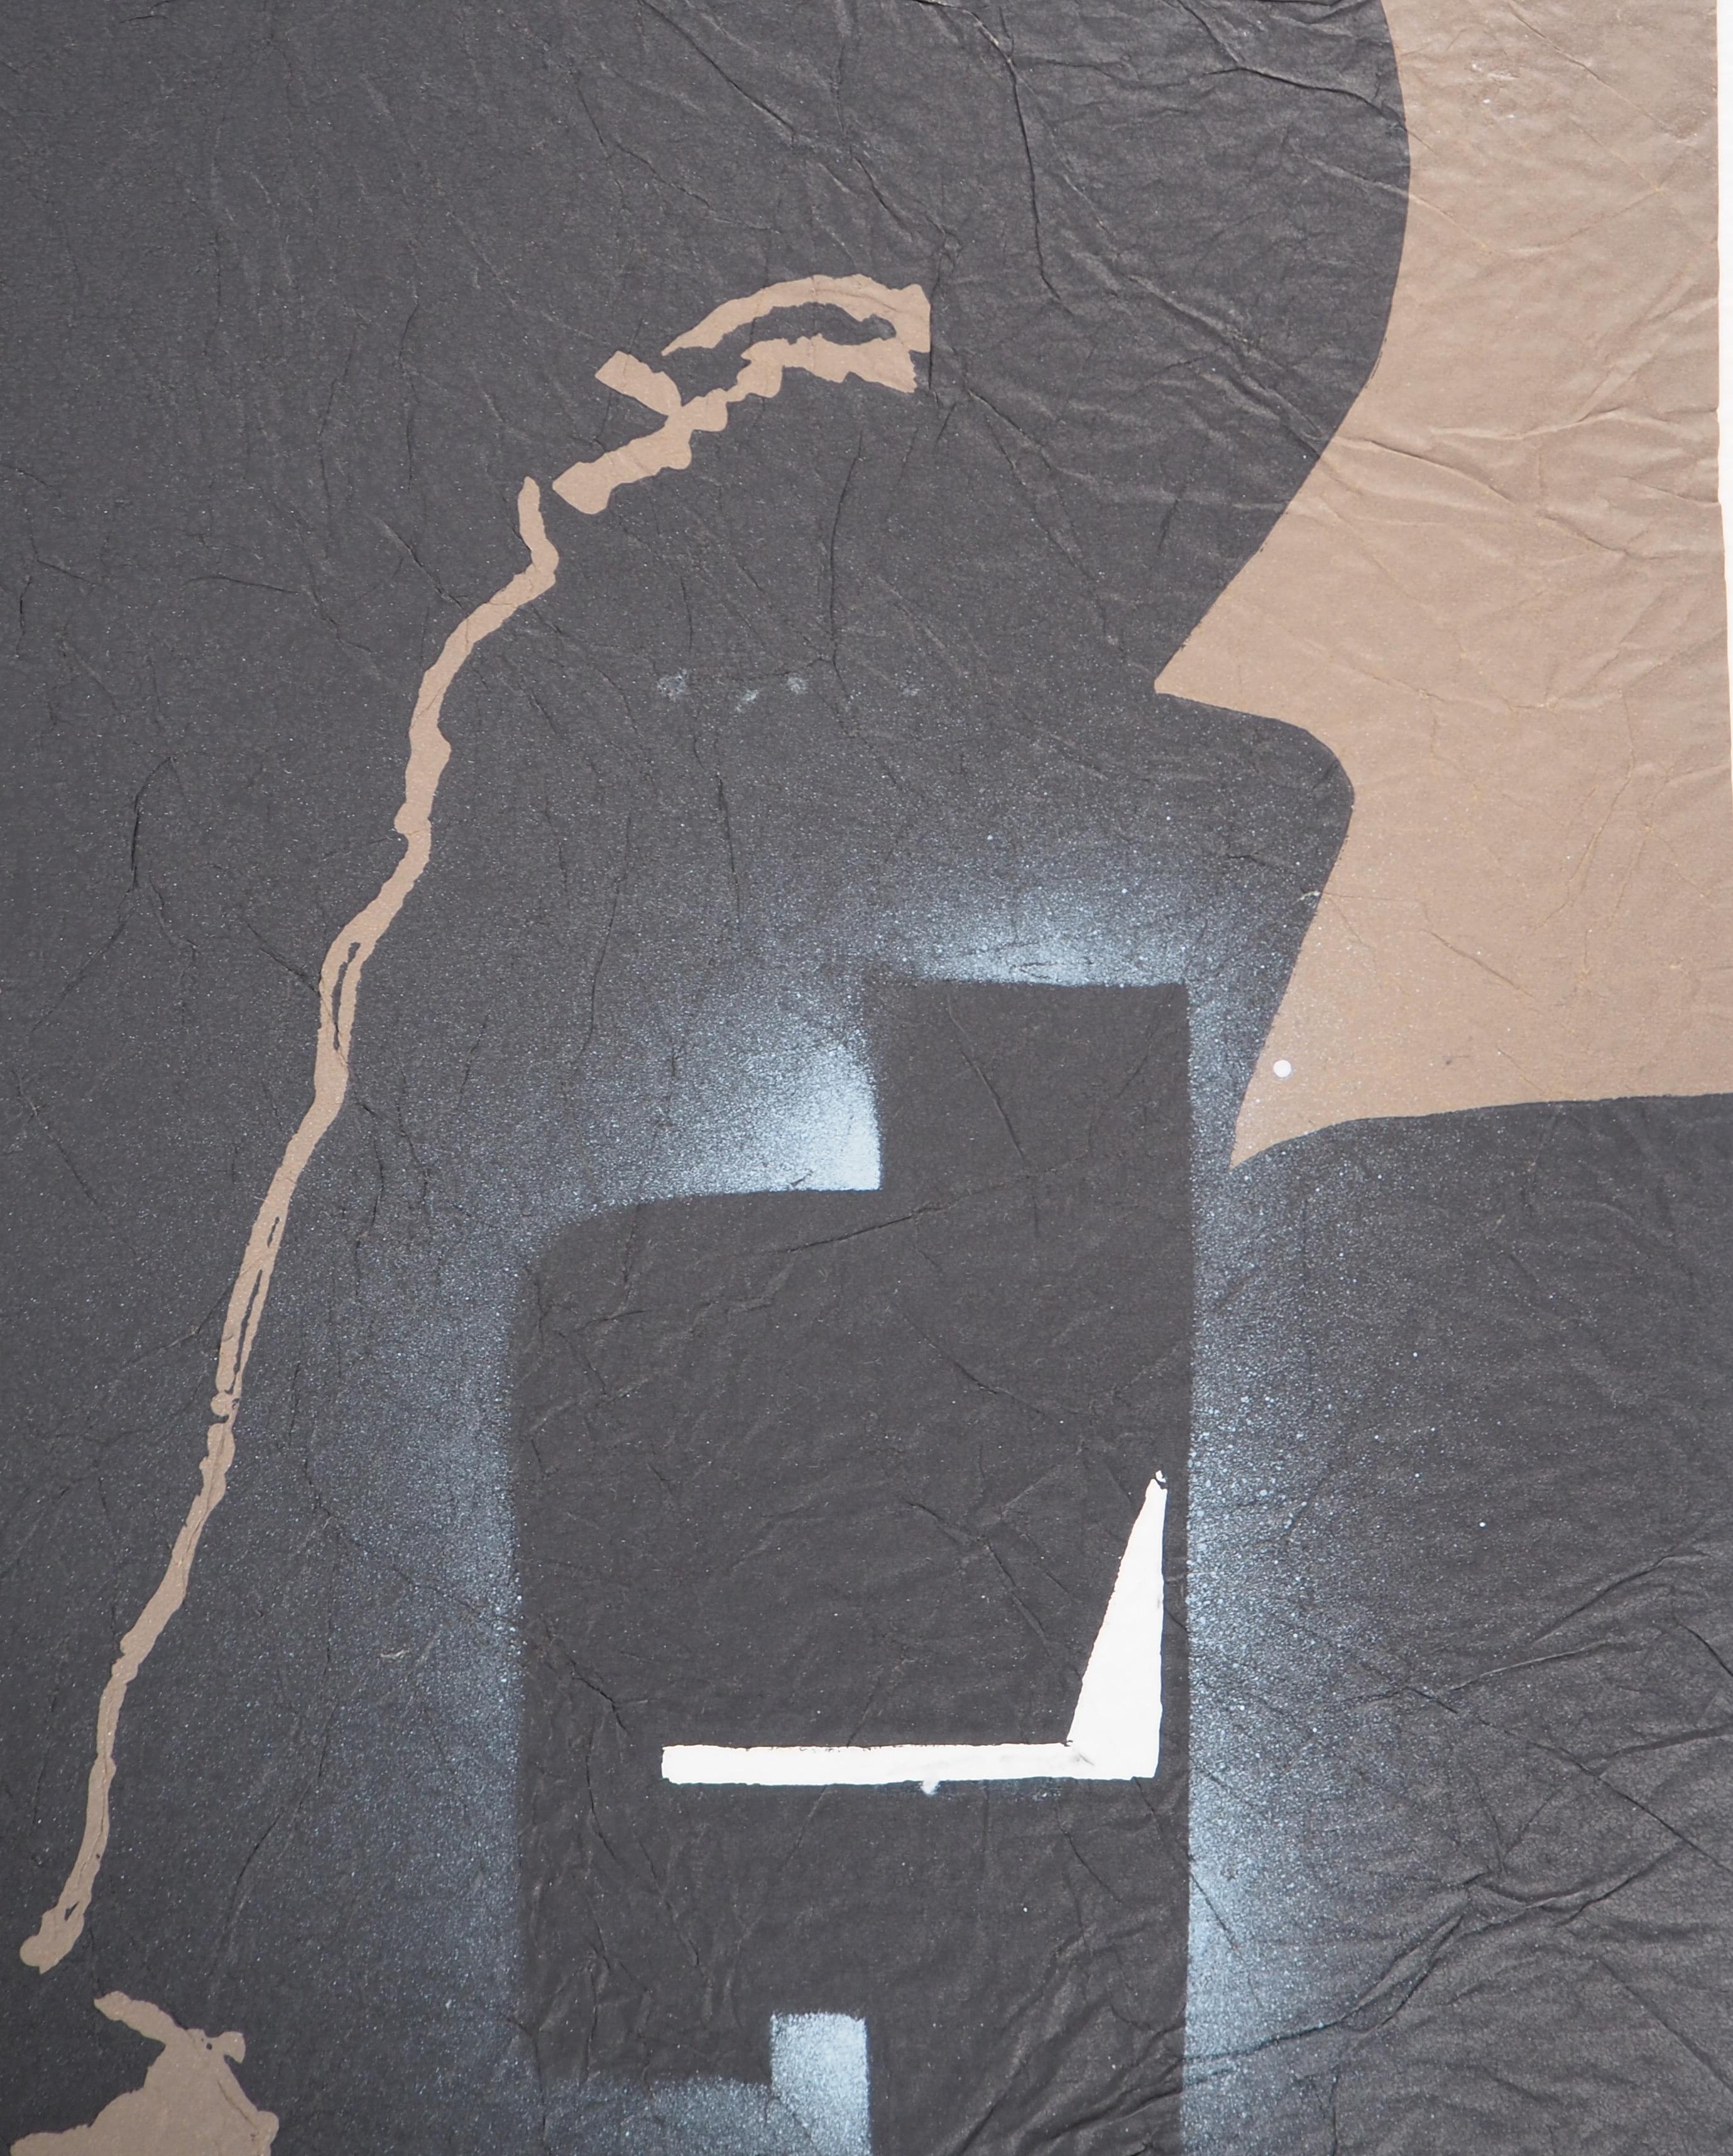 Ladislaus Kijno
Verstrichene Zeit in Braun

Siebdruck auf gerilltem Papier, aufgetragen auf Vellum
Veredelt mit Acrylmalerei
Vollständig von der Künstlerin handgefertigt 
Handsigniert mit Bleistift
Für einen Satz von 9 Stück (jedes Stück ist